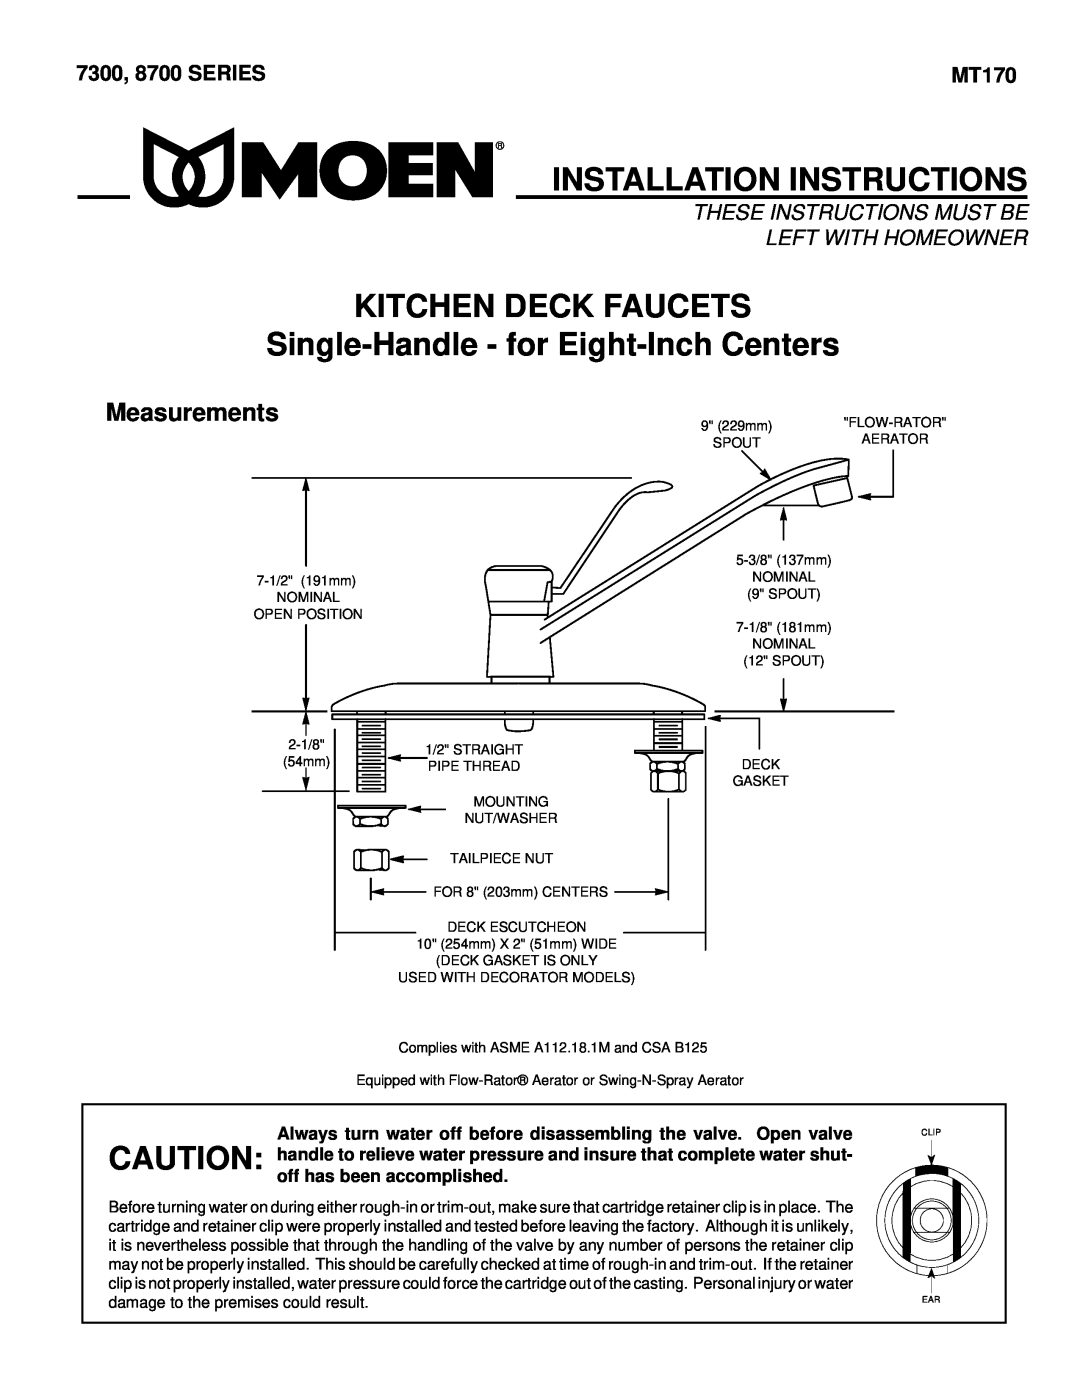 Moen 7305 warranty Kitchen Deck Faucets, Single-Handle- for Eight-InchCenters, Mezcladoras Para Cocina, Pulgadas, English 